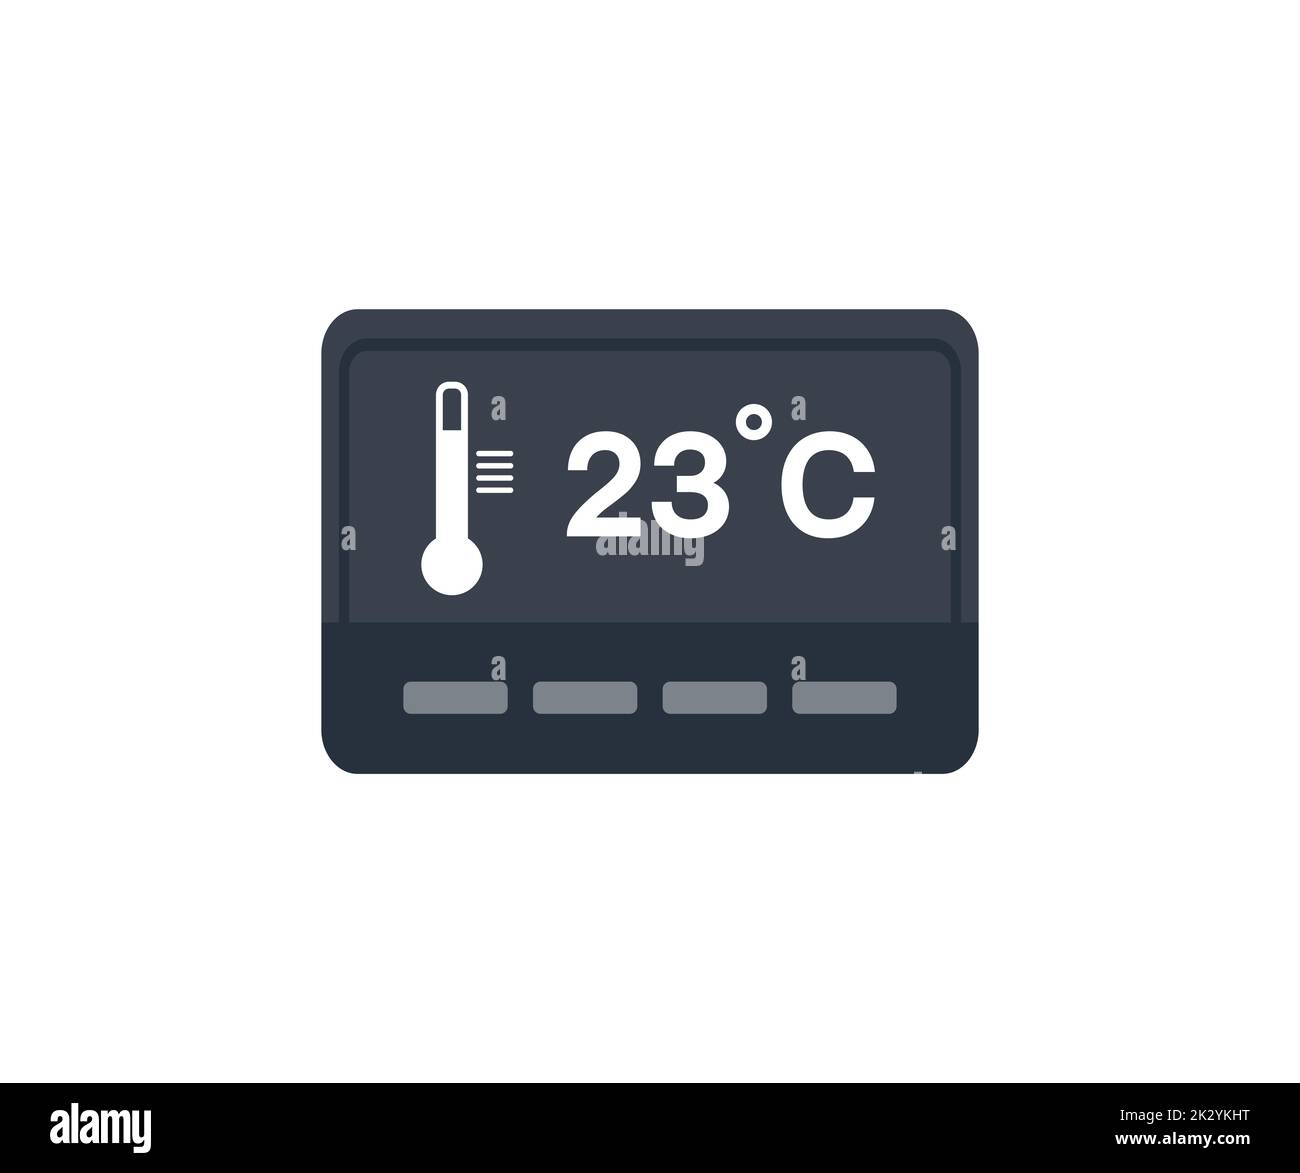 Home riscaldamento, casa controllo della climatizzazione logo design. Domotica per l'automazione domestica, termostato collegato con icone app che mostrano temperatura e raffreddamento termico. Illustrazione Vettoriale